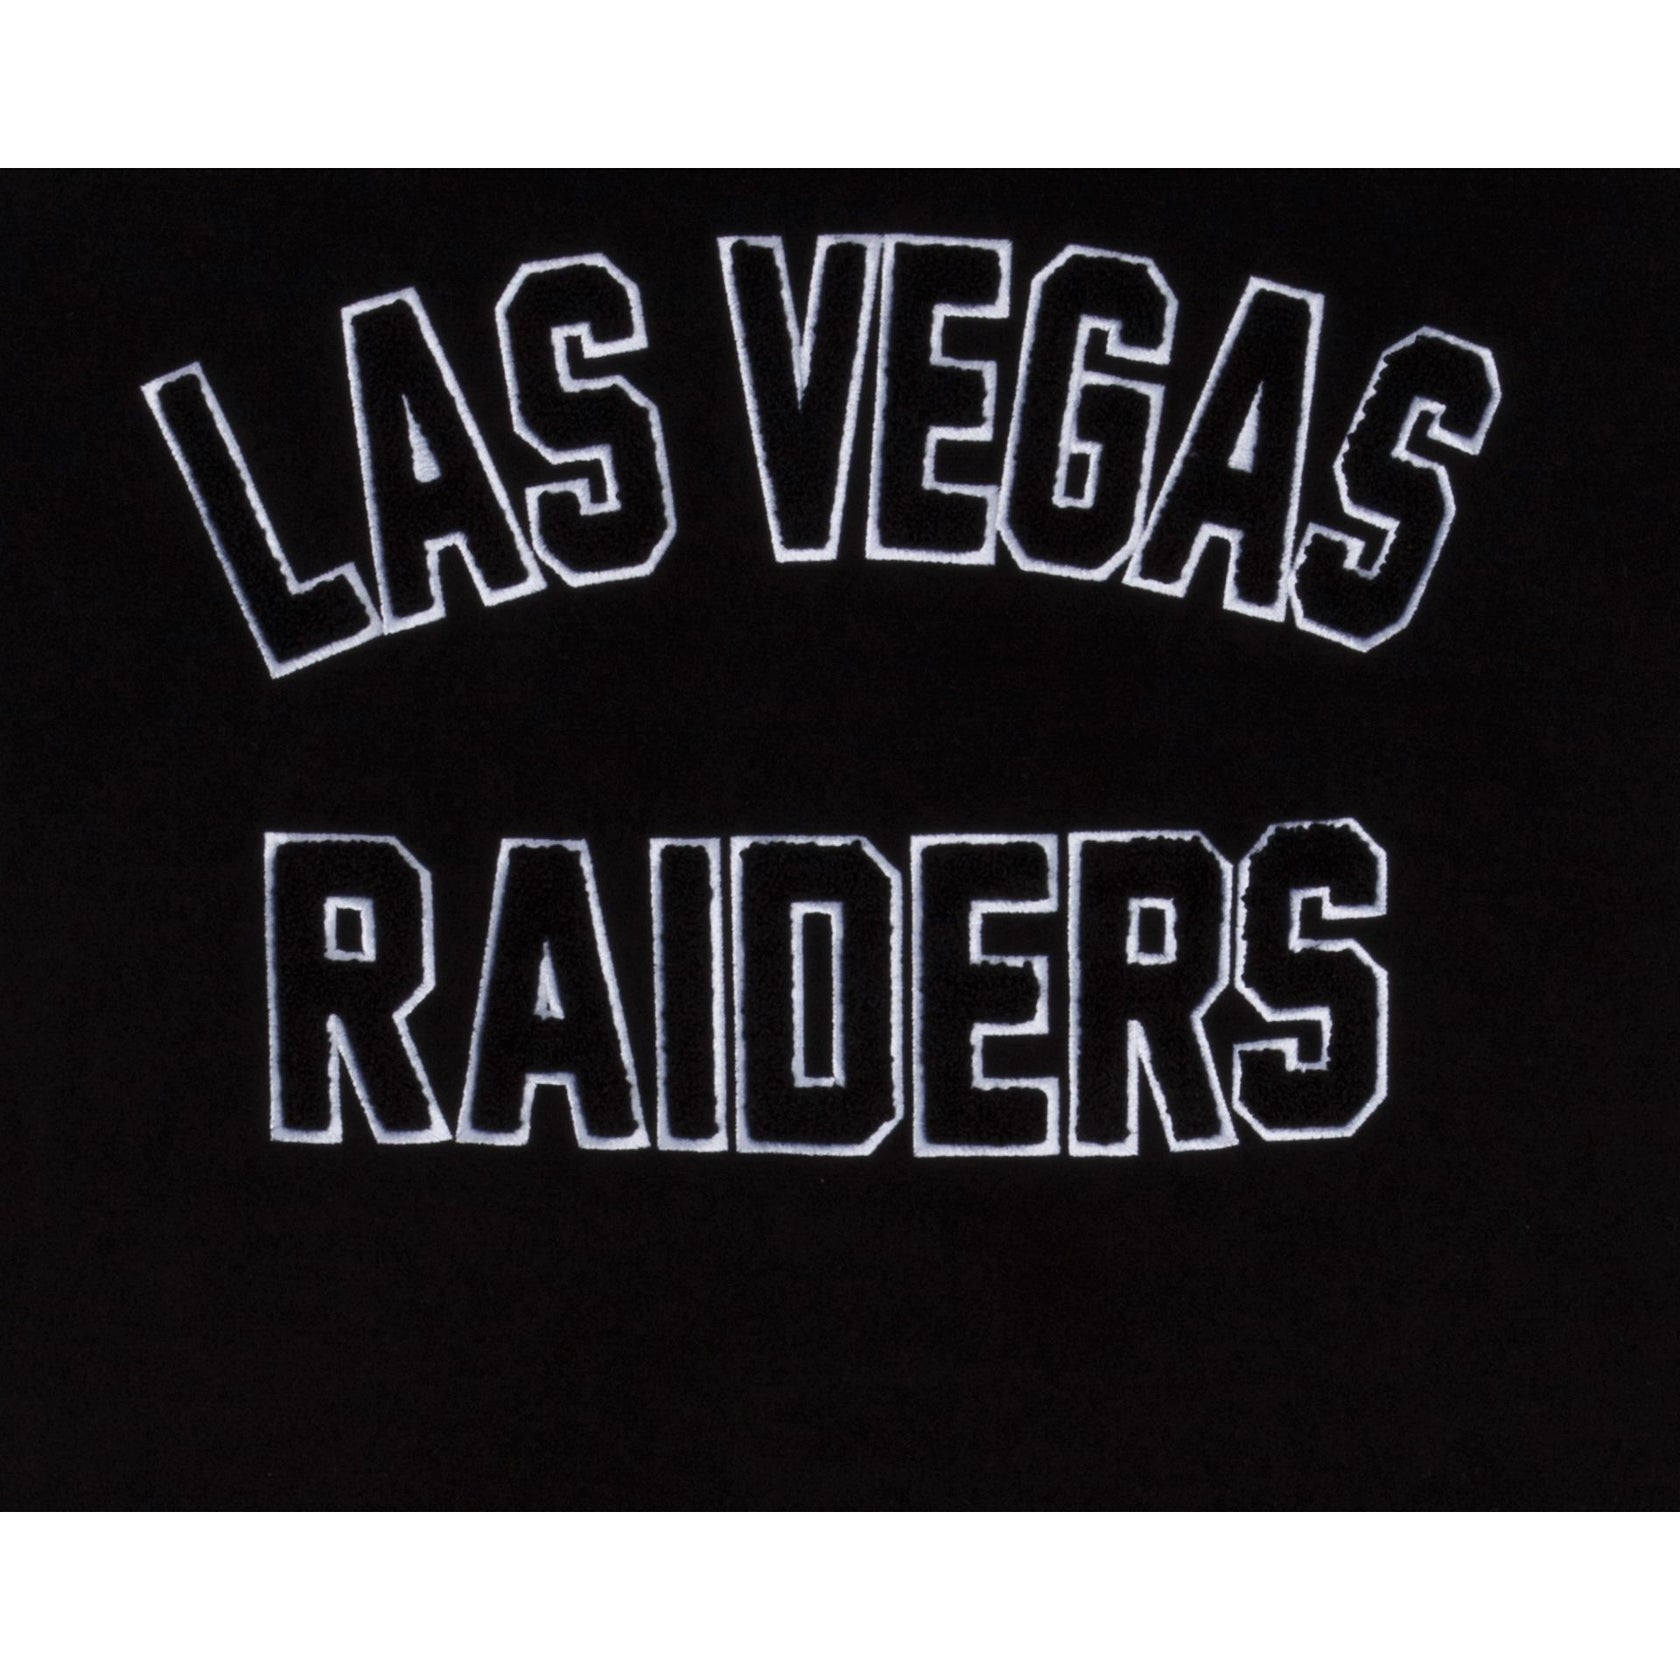 Las Vegas Raiders Appliqué Patches 